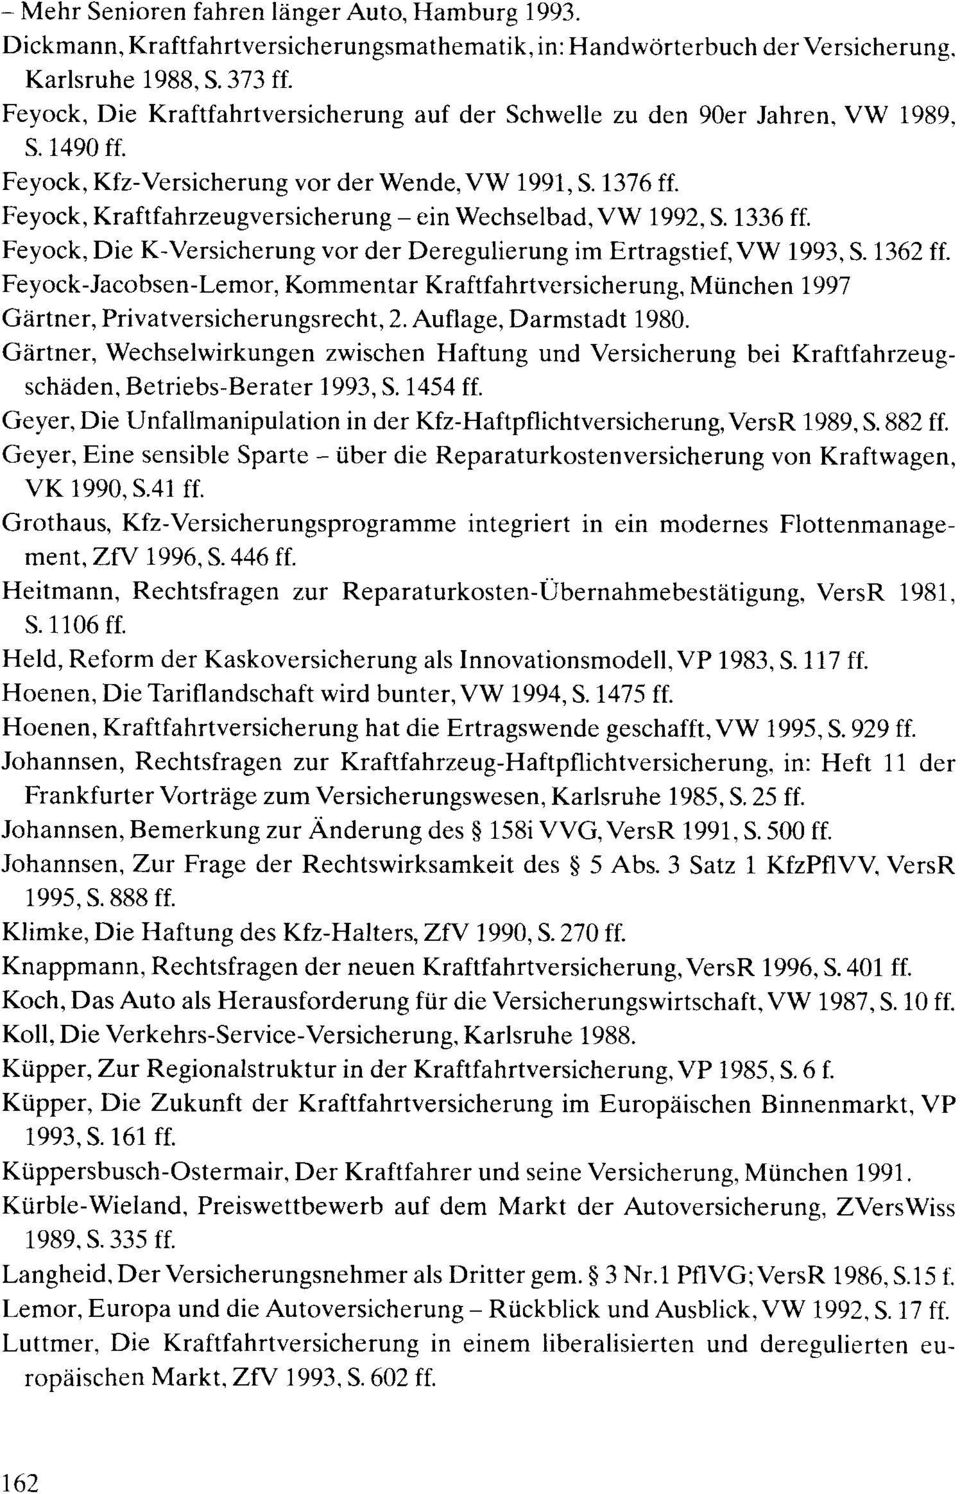 Feyock, Kraftfahrzeugversicherung - ein Wechselbad, VW 1992, S. 1336 ff. Feyock, Die K-Versicherung vor der Deregulierung im Ertragstief, VW 1993, S. 1362 ff.